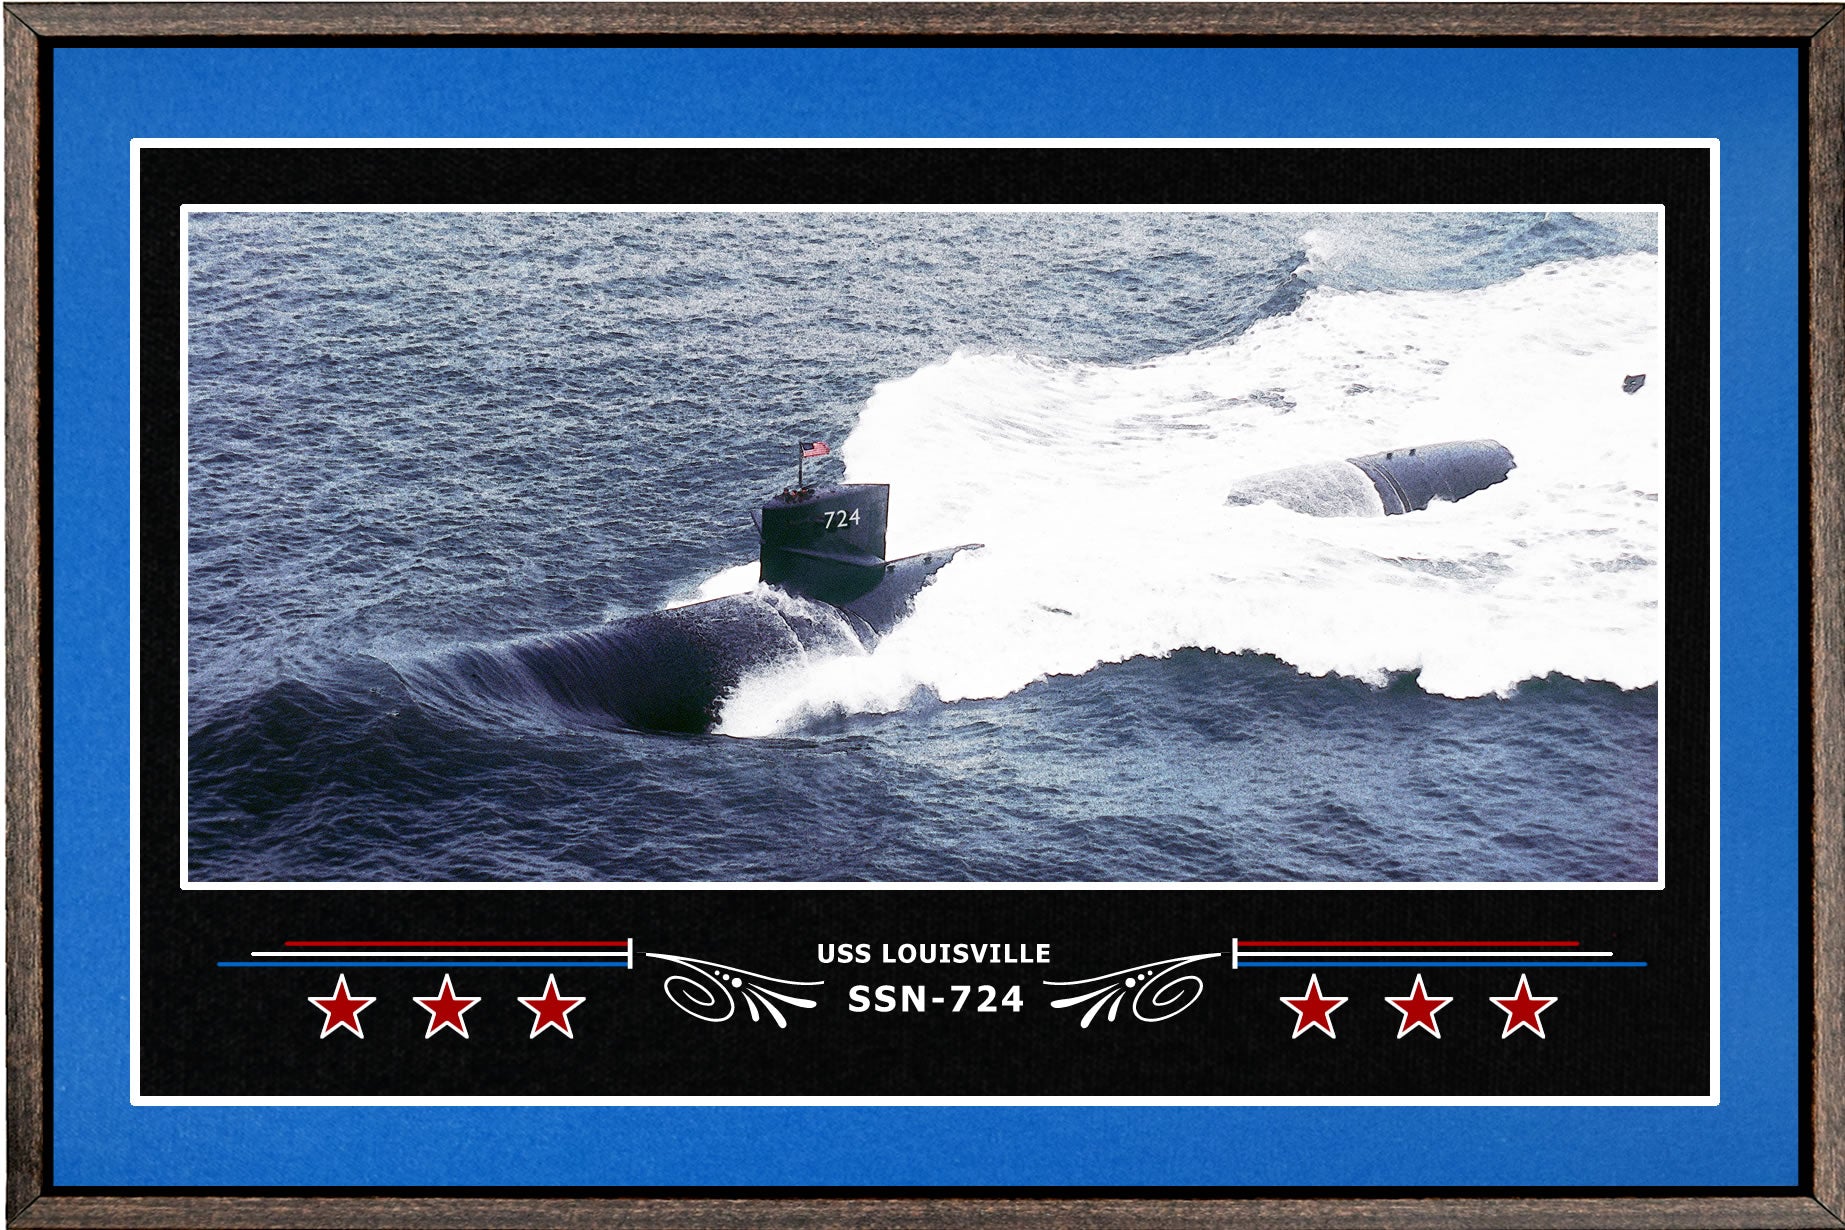 USS LOUISVILLE SSN 724 BOX FRAMED CANVAS ART BLUE